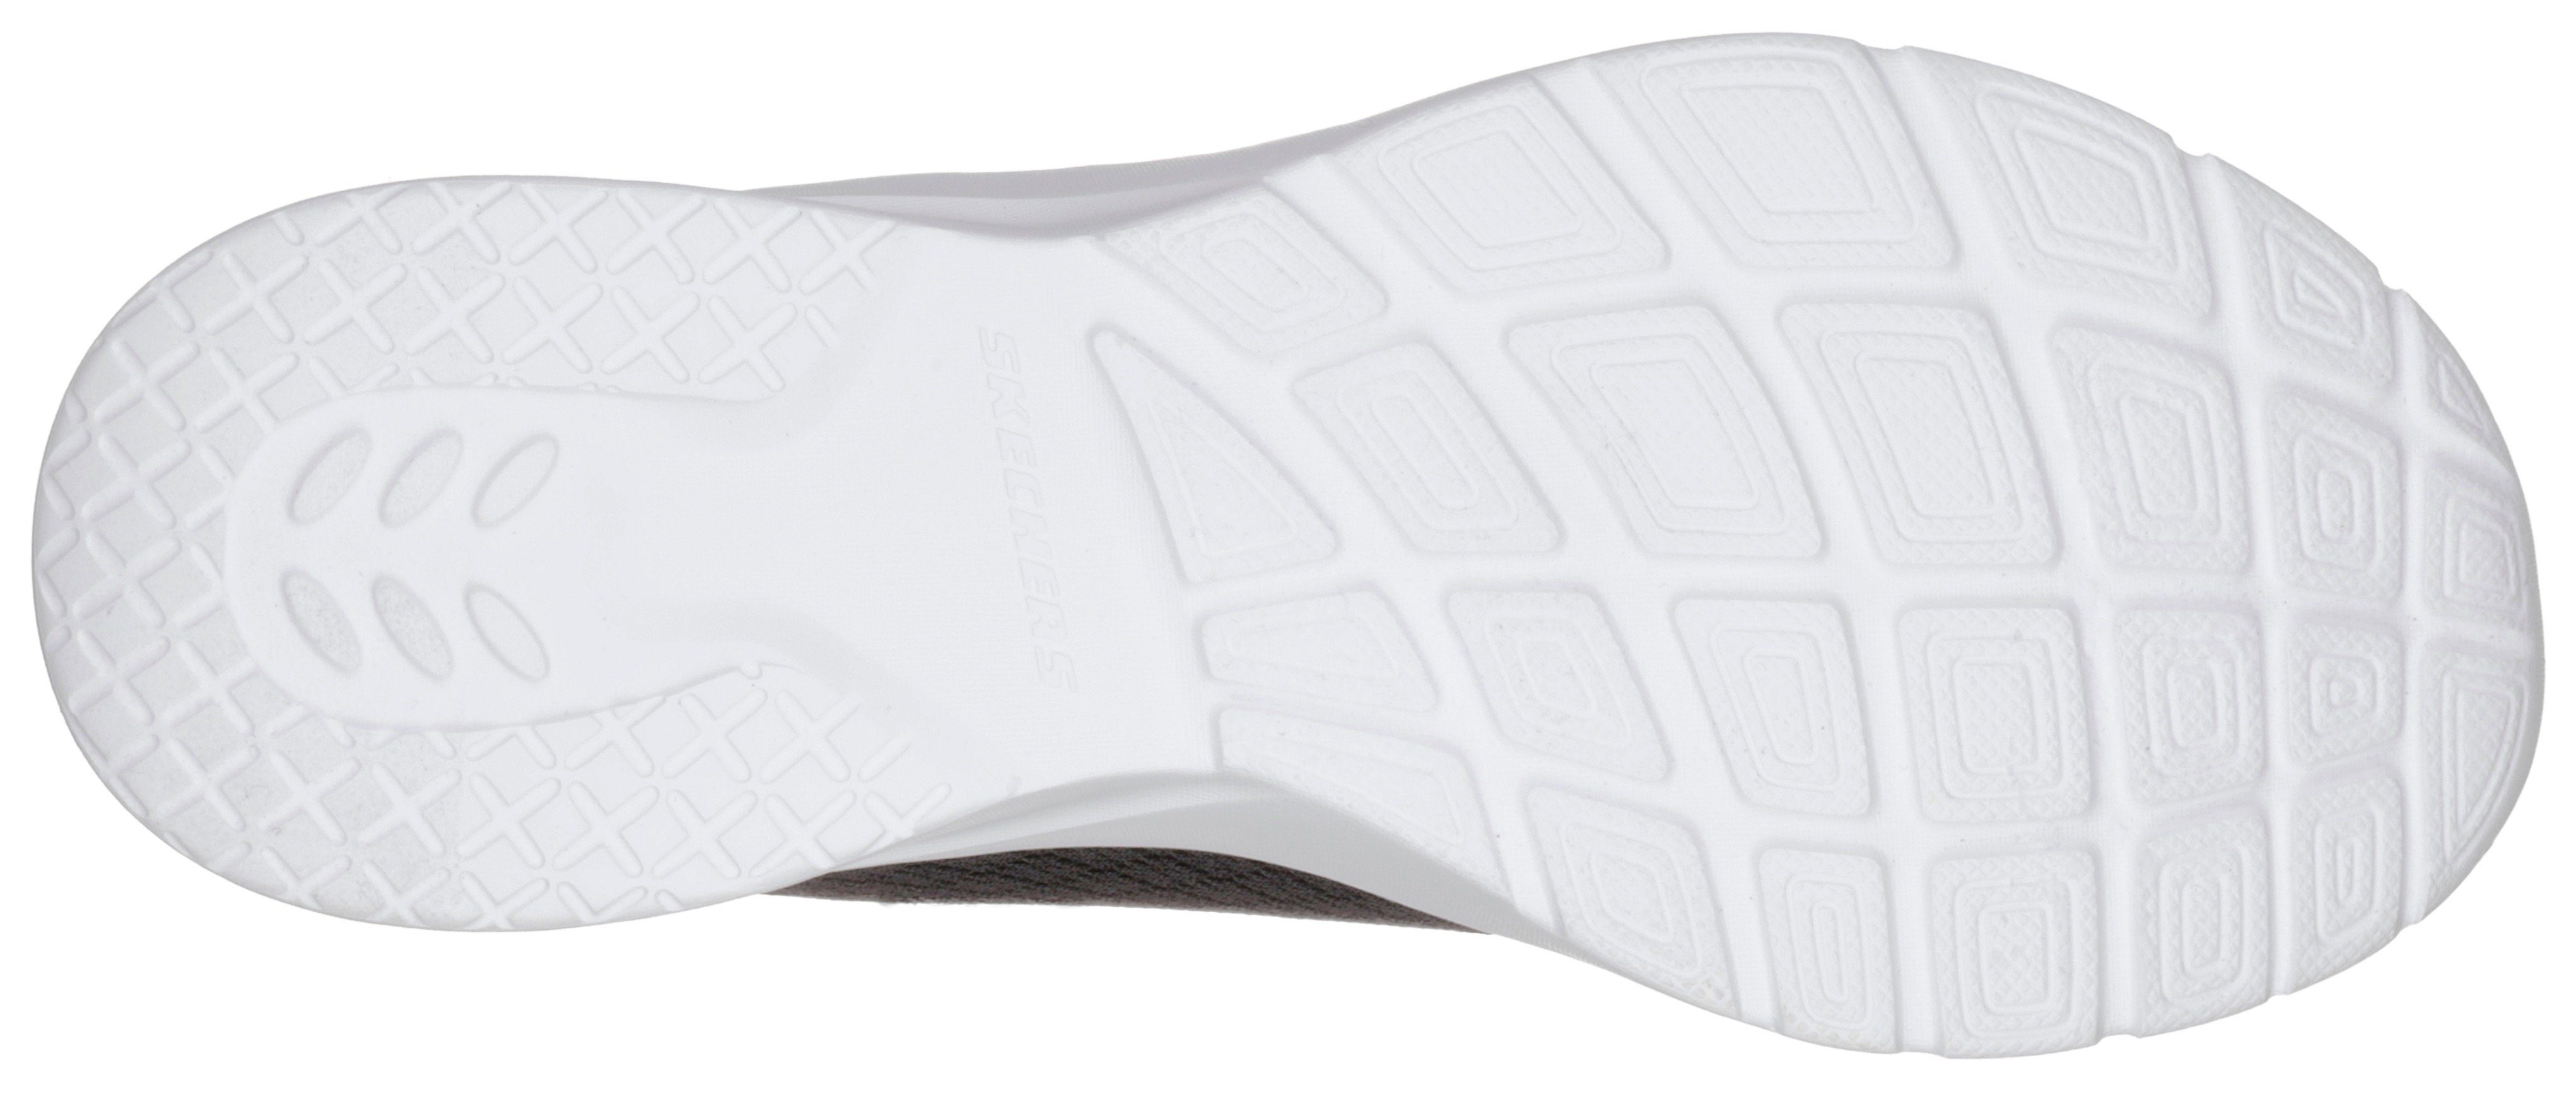 Eye - Dynamight schwarz-weiß Sneaker Eye to Skechers mit 2.0 Memory Foam